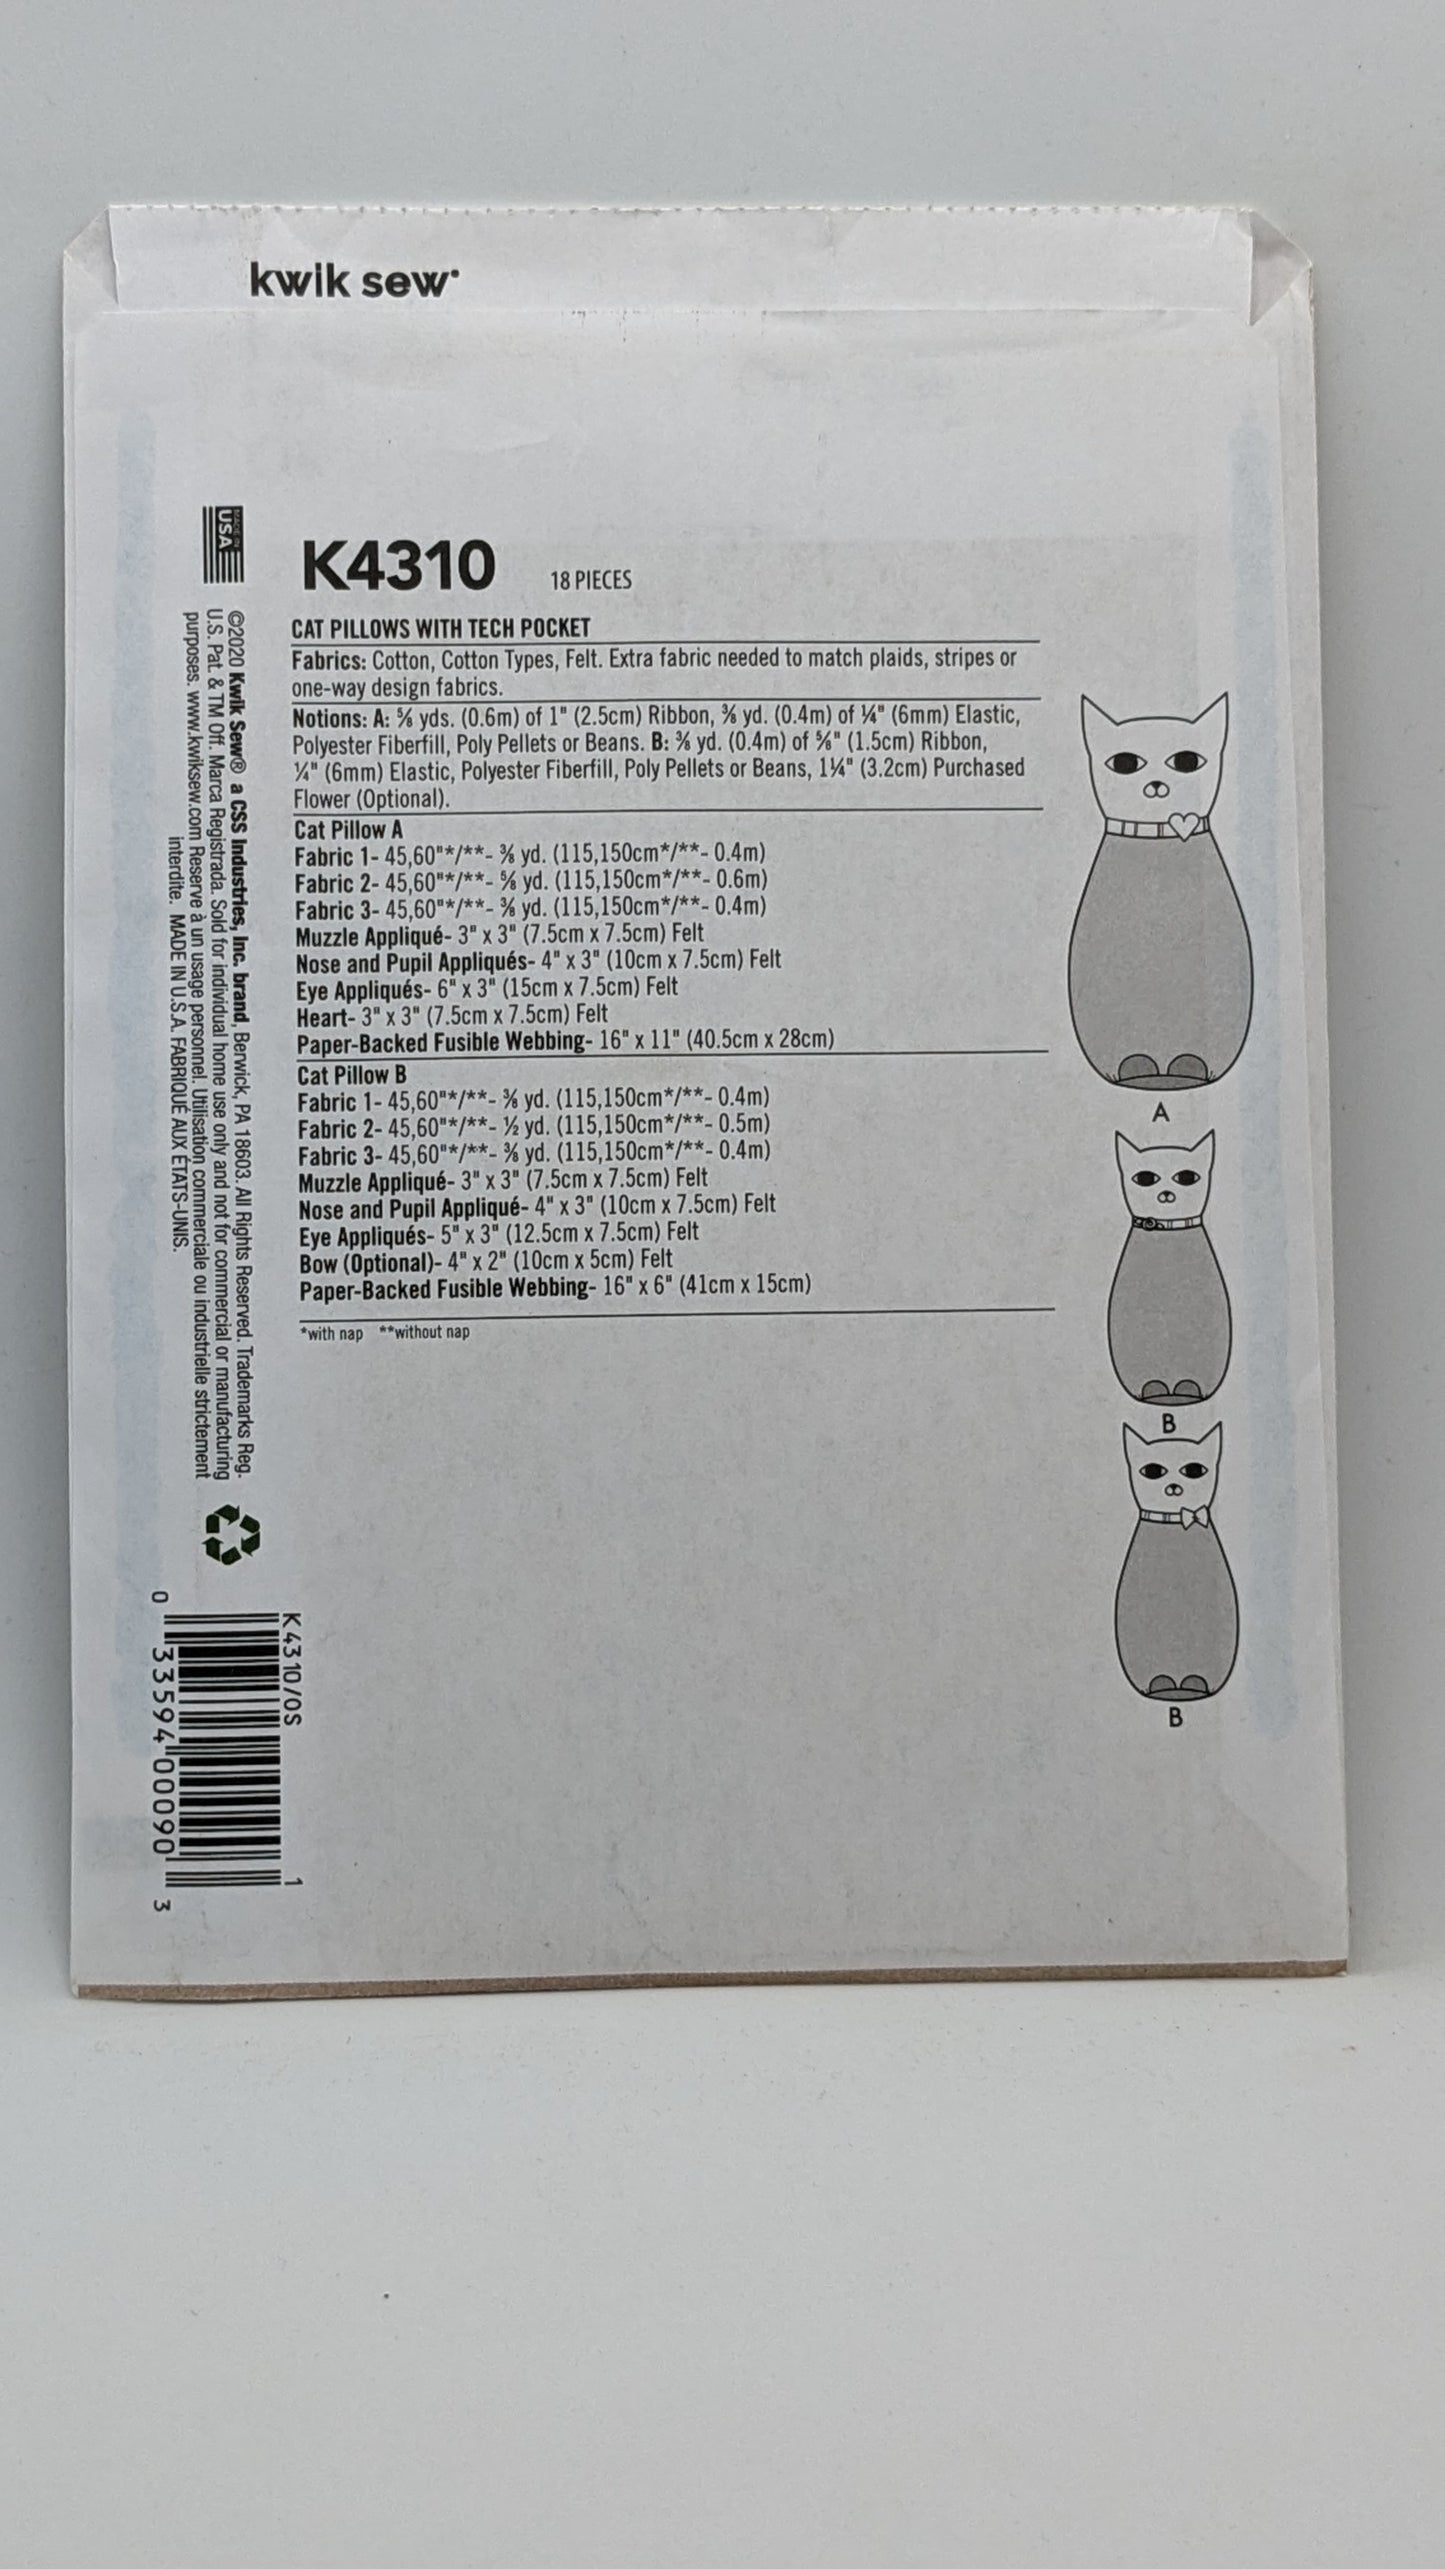 K4310 - Cat Pillows